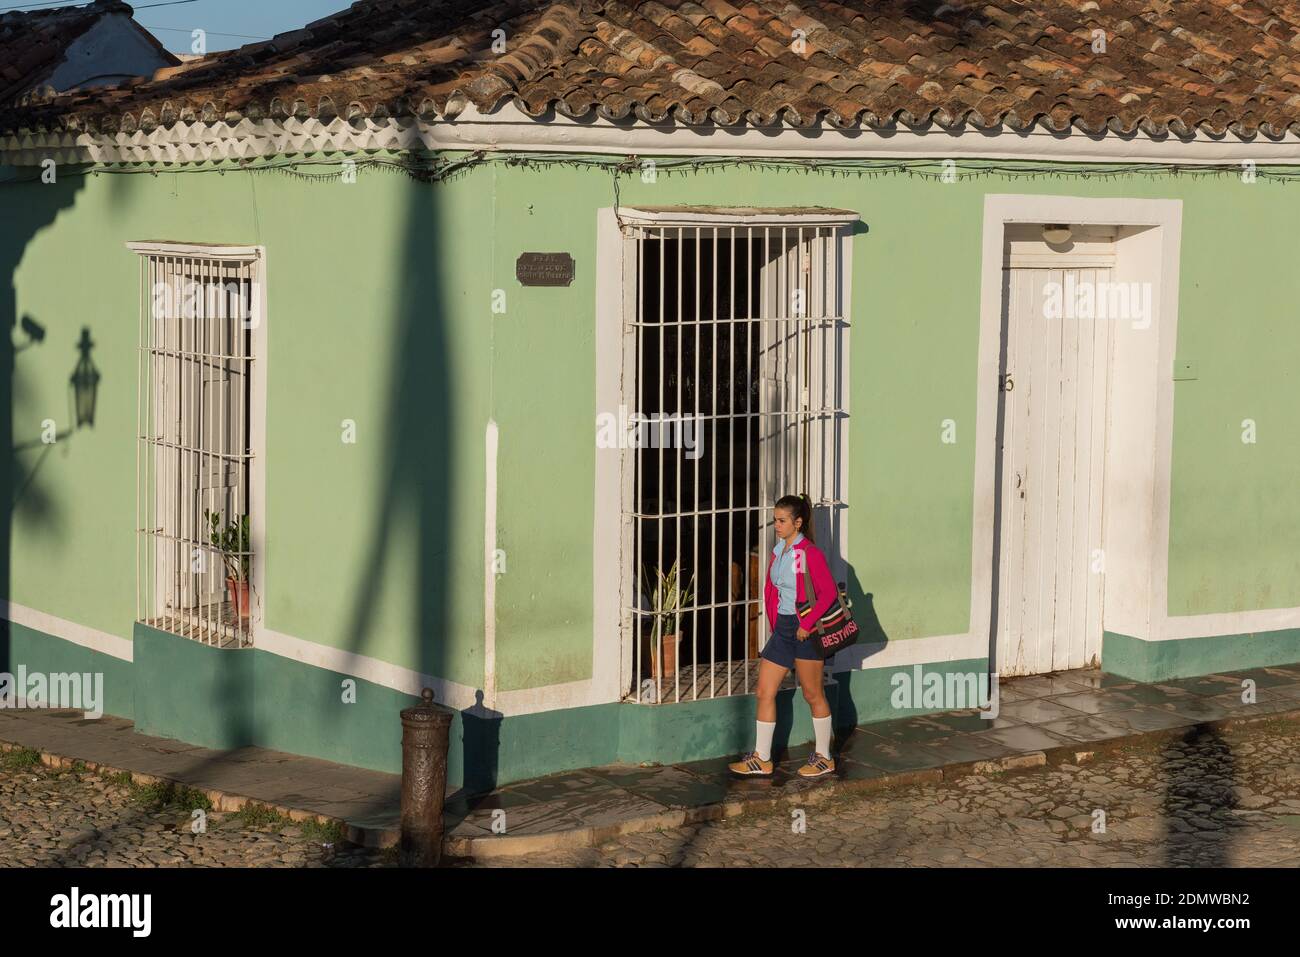 Studente a piedi, Trinidad Cuba Foto Stock